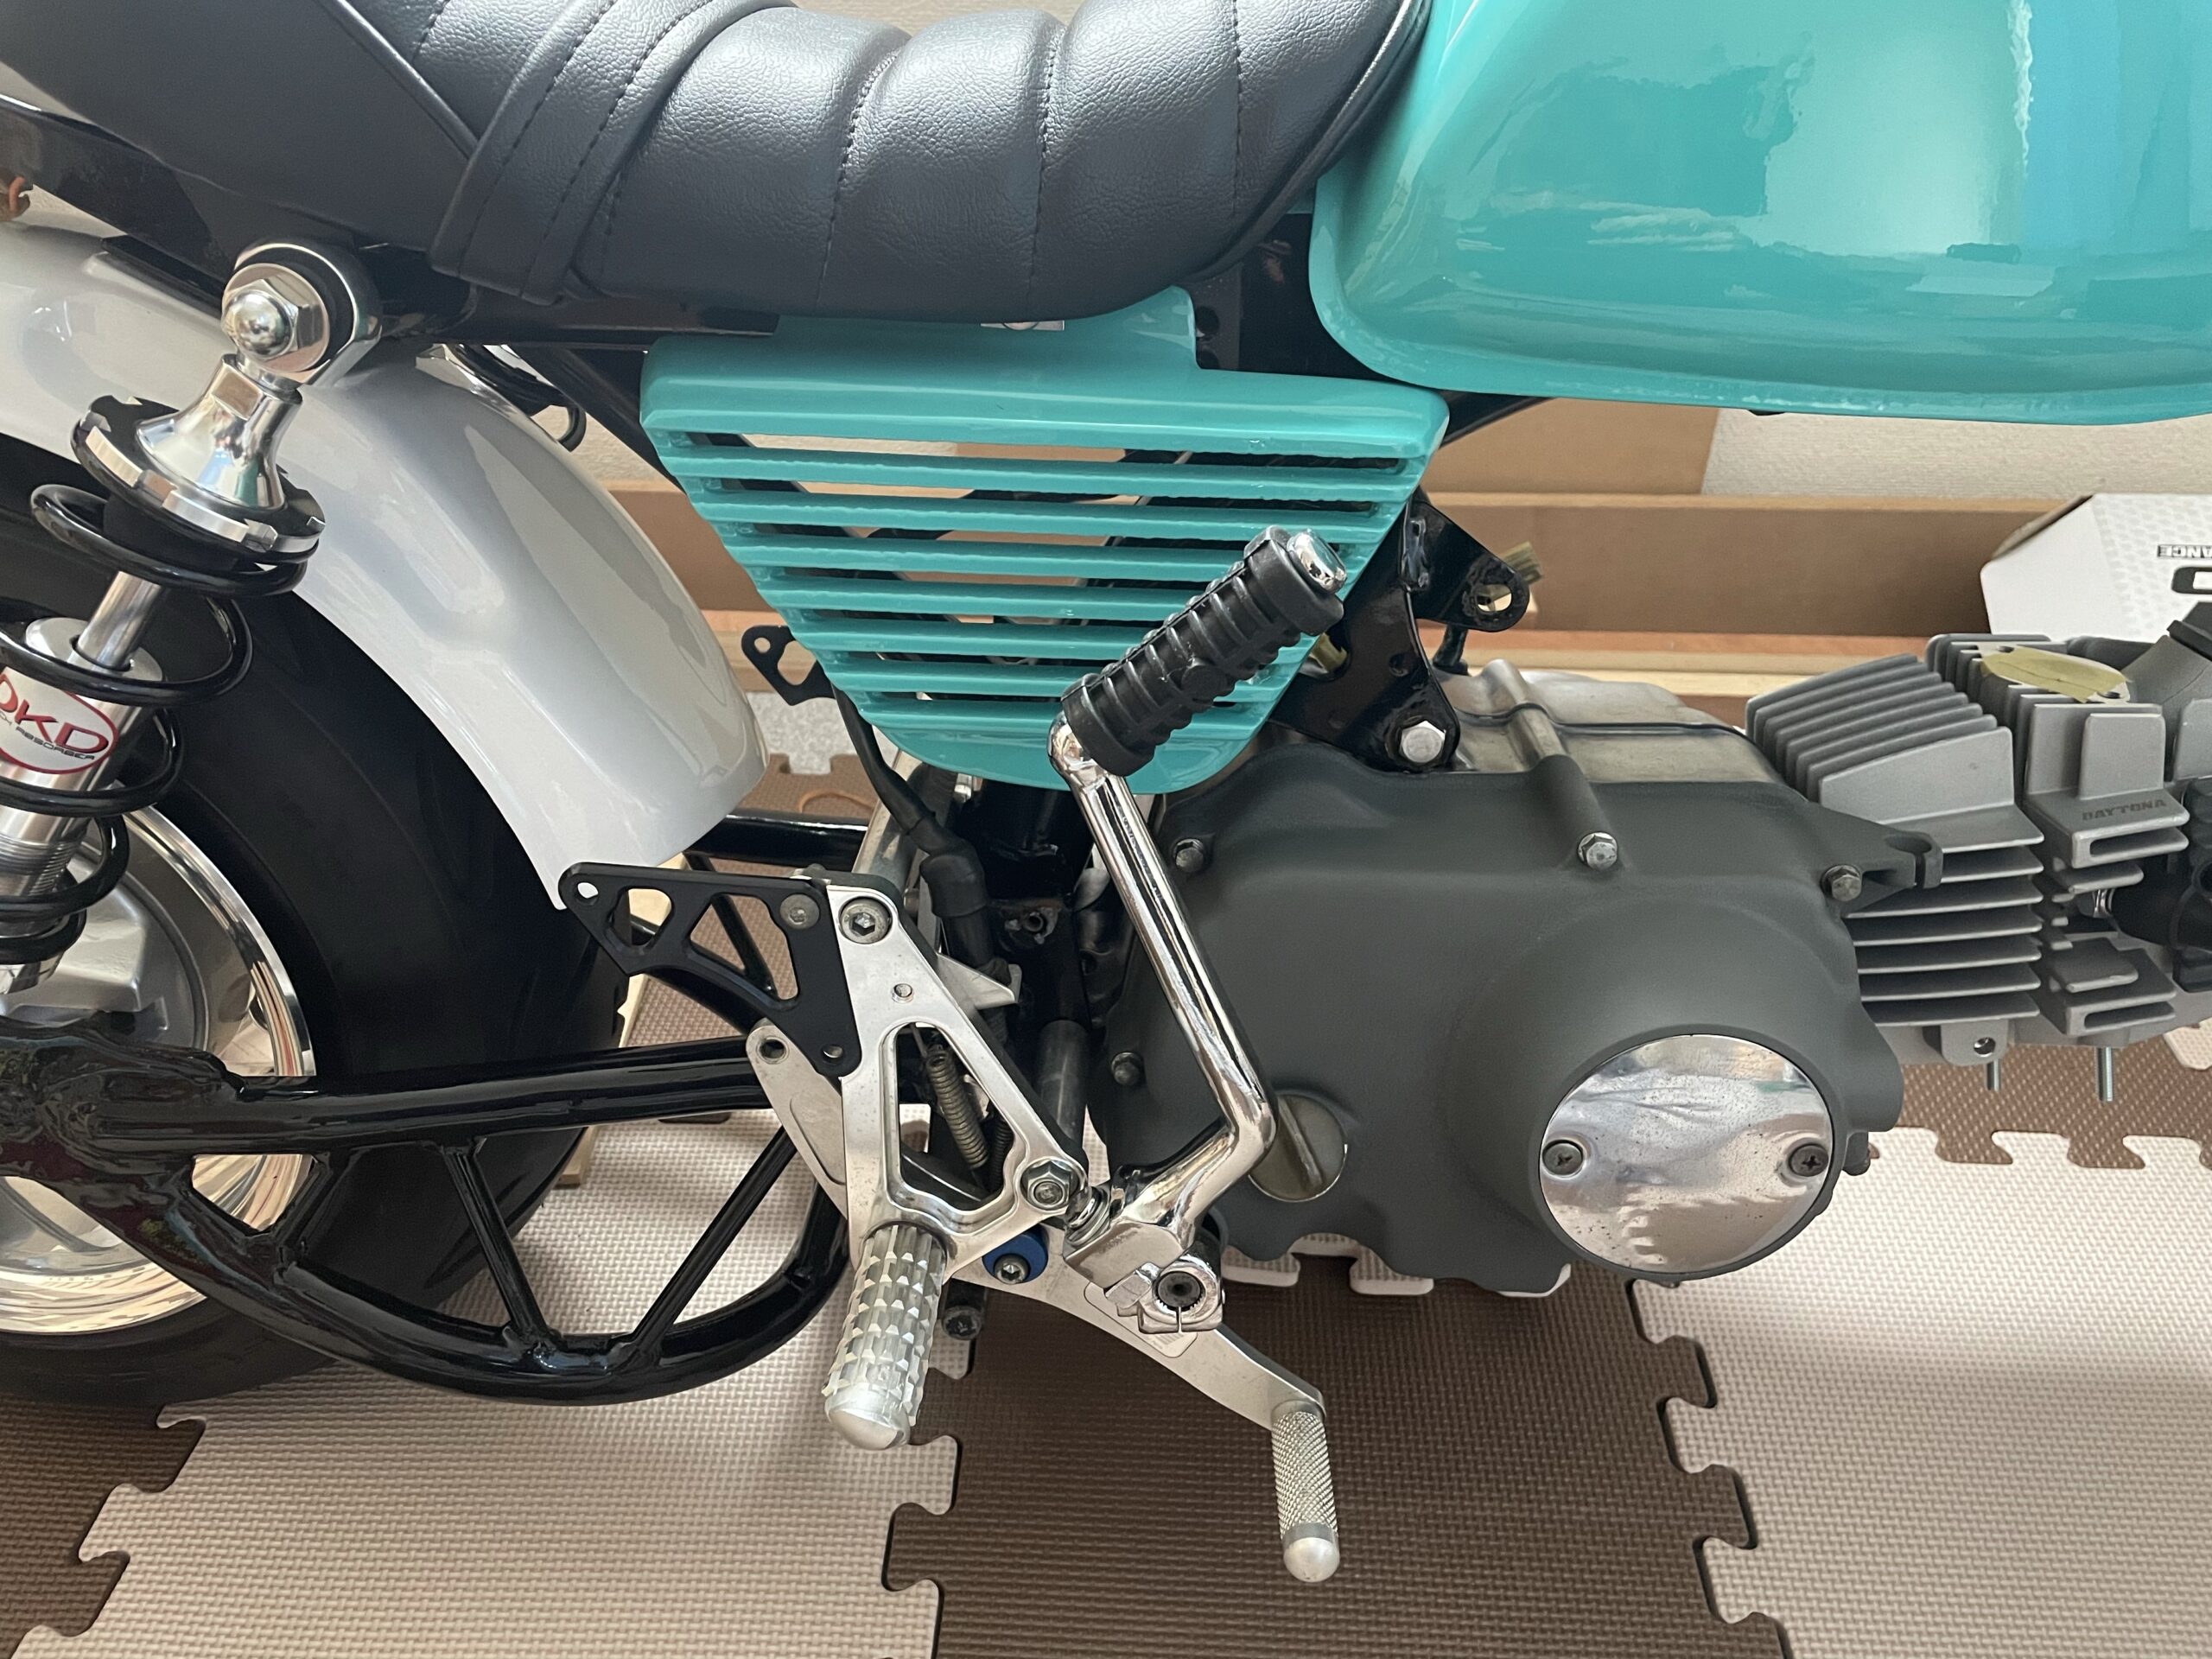 （正規品）田中商会 シャリィ50 ダックス ダックスノーマルステム用 ディスクブレーキコンバートキット Sea Tac バイク